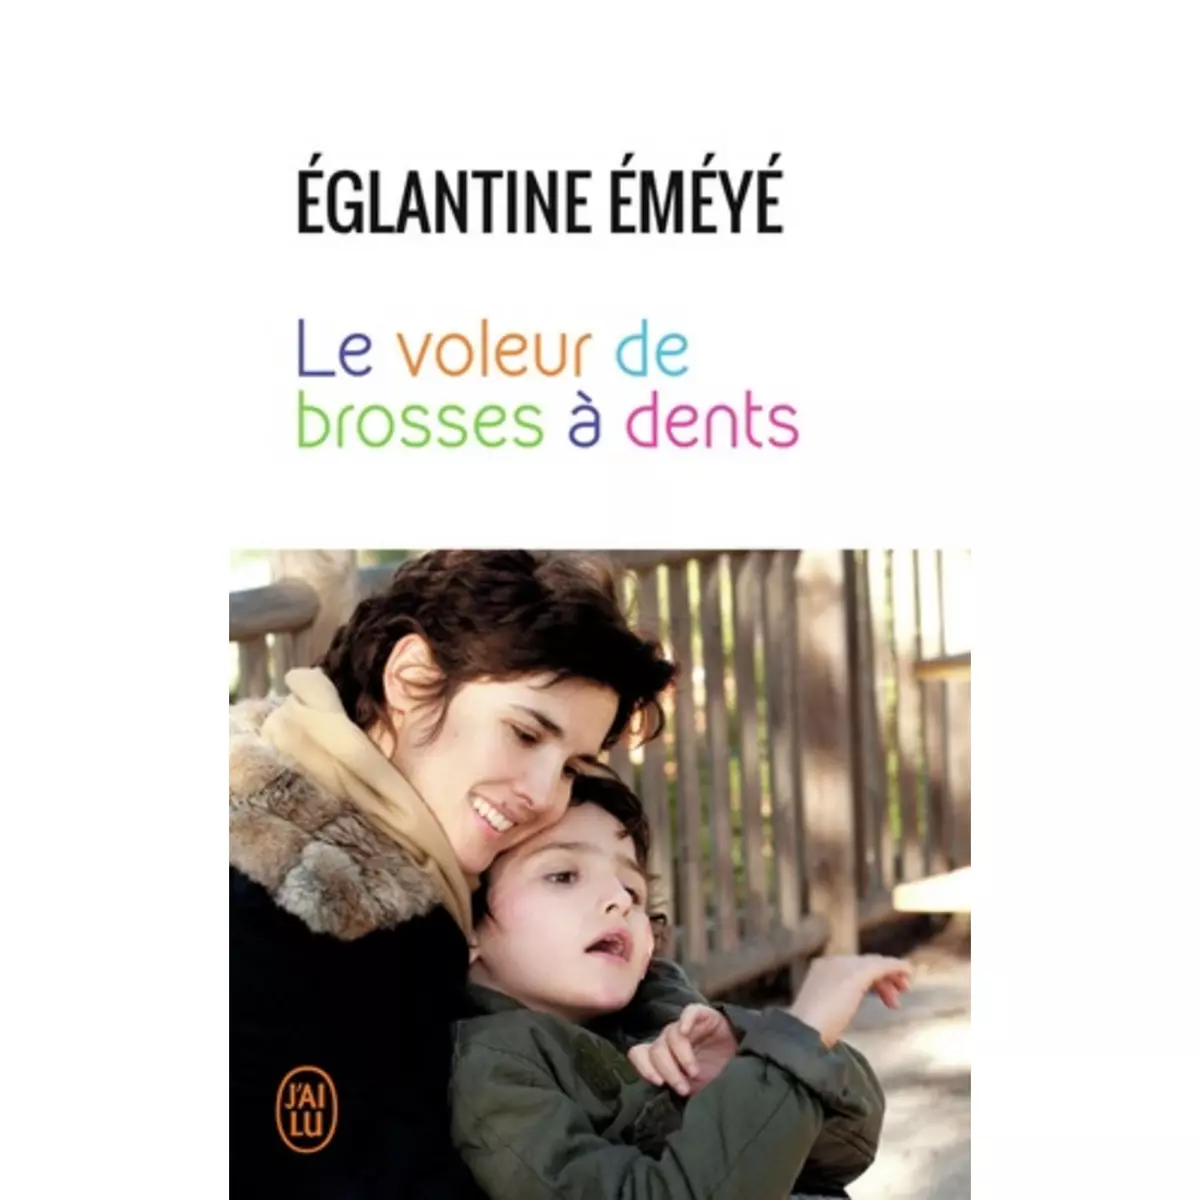  LE VOLEUR DE BROSSES A DENTS, Eméyé Eglantine